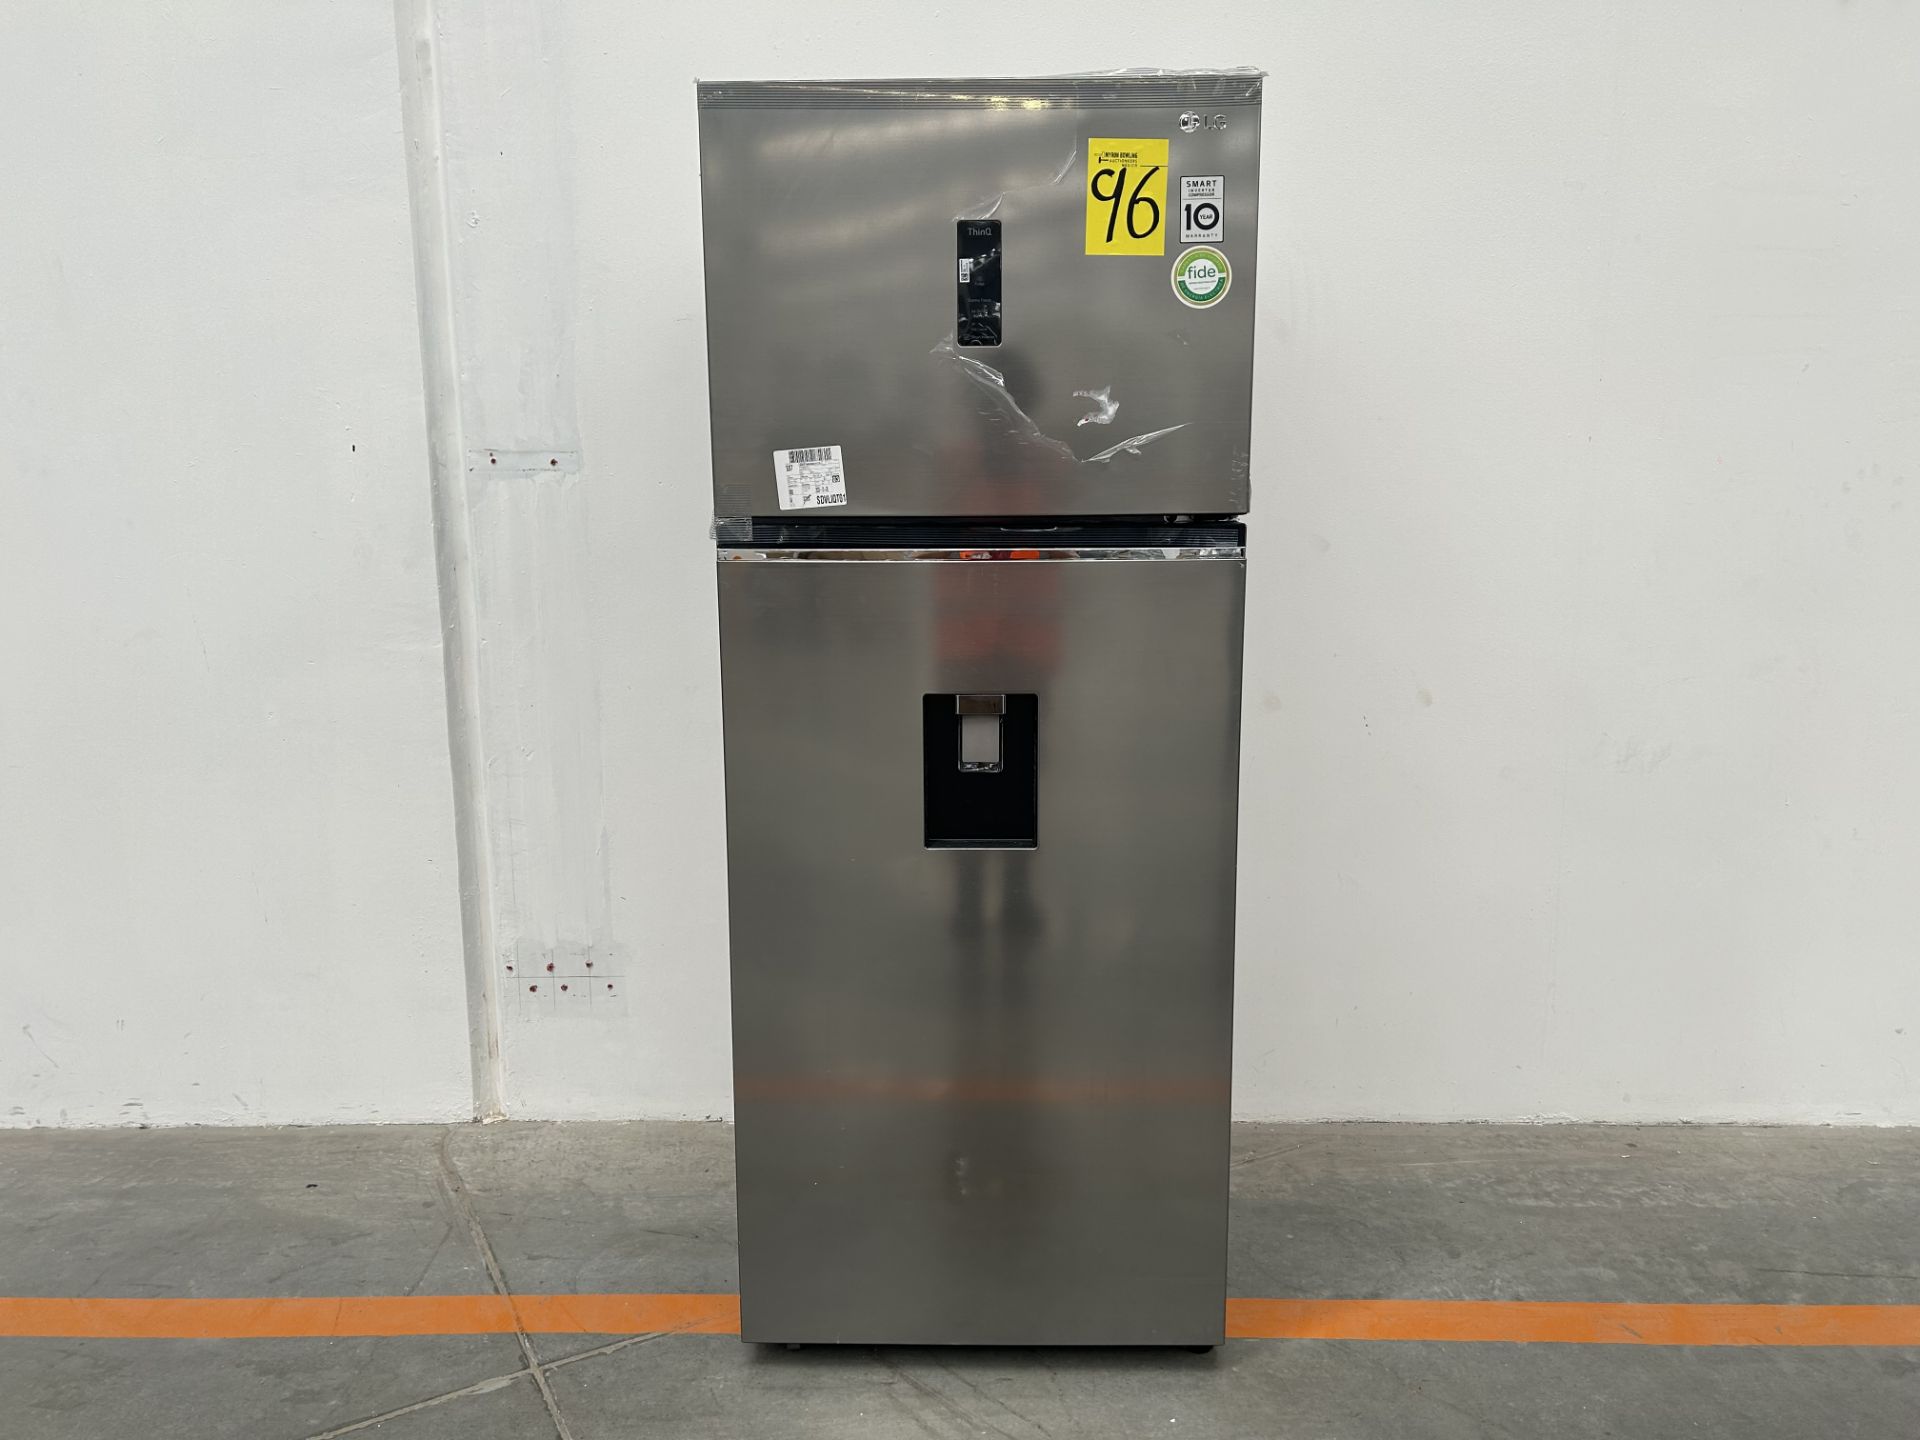 (NUEVO) Refrigerador con dispensador de agua Marca LG, Modelo VT40AWP, Serie L1S381, Color GRIS